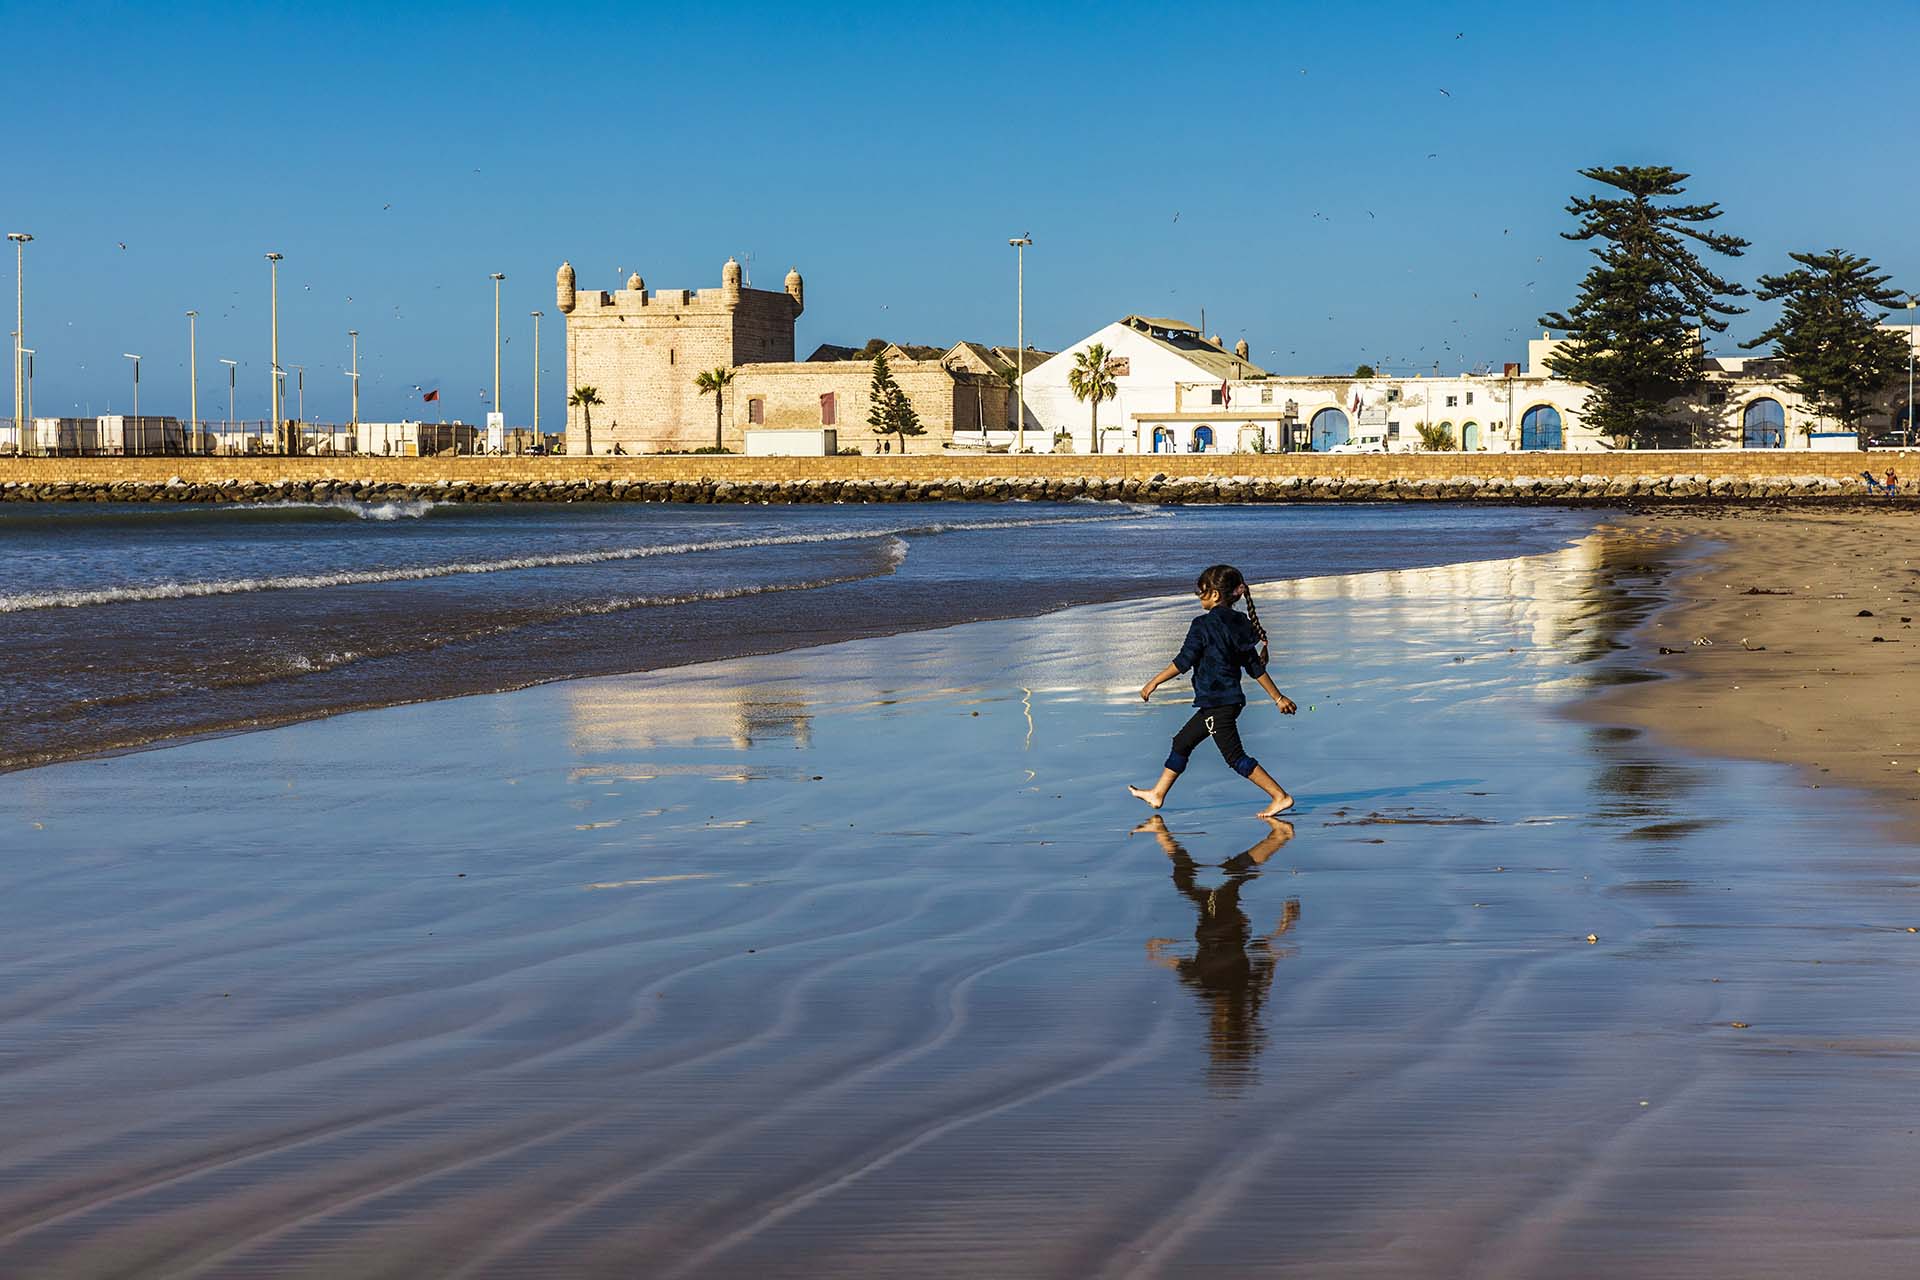 Marocco, la meravigliosa battigia di Essaouira un perfetto parco giochi